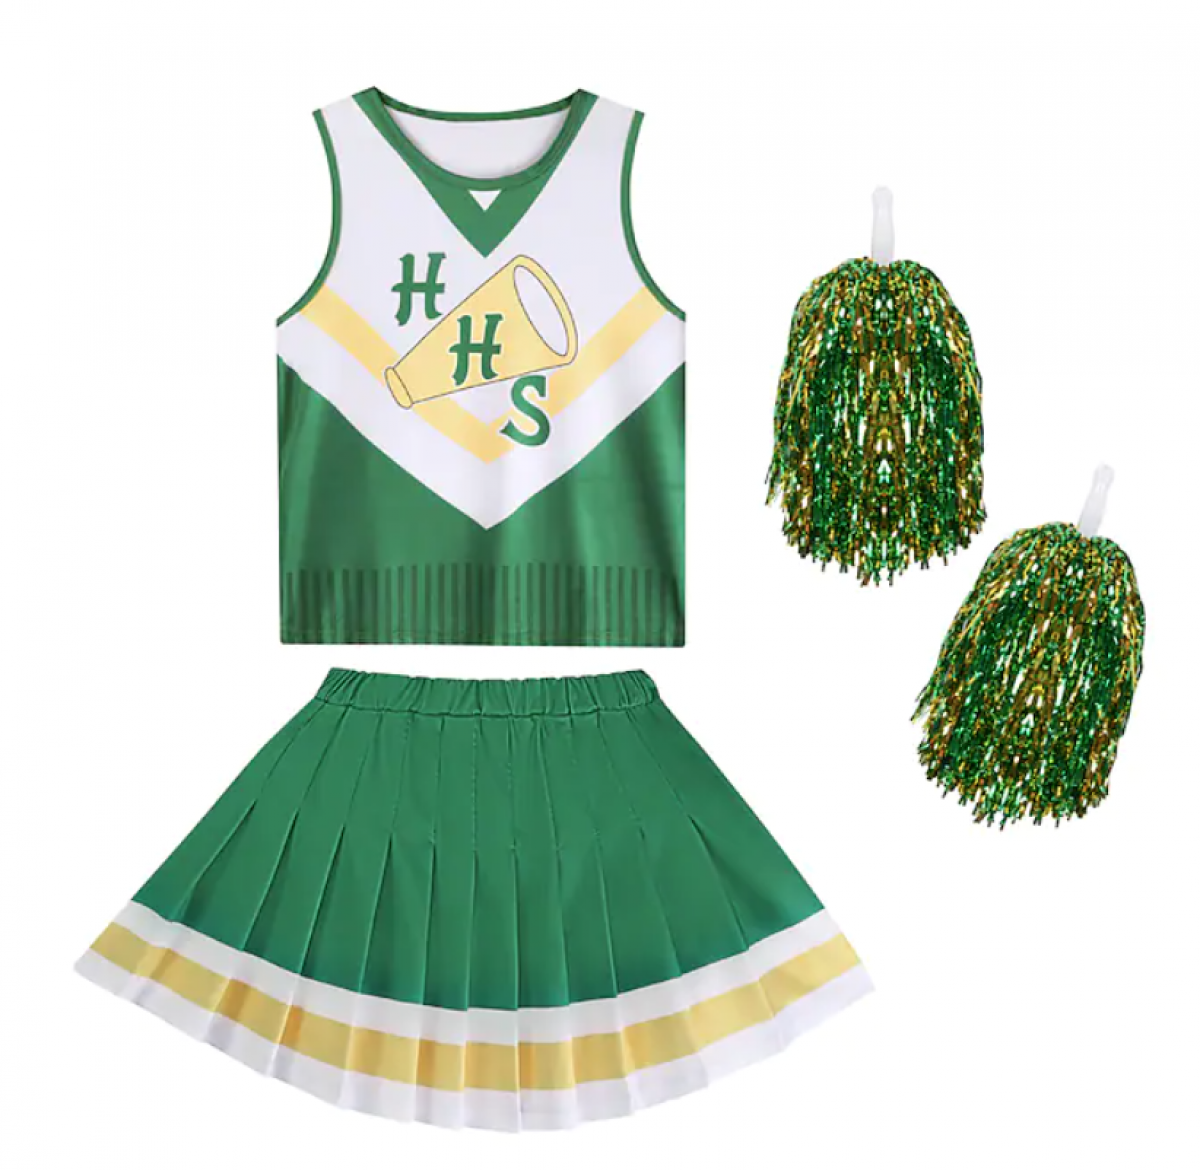 L'uniforme de cheerleader de Chrissy (saison 4) 